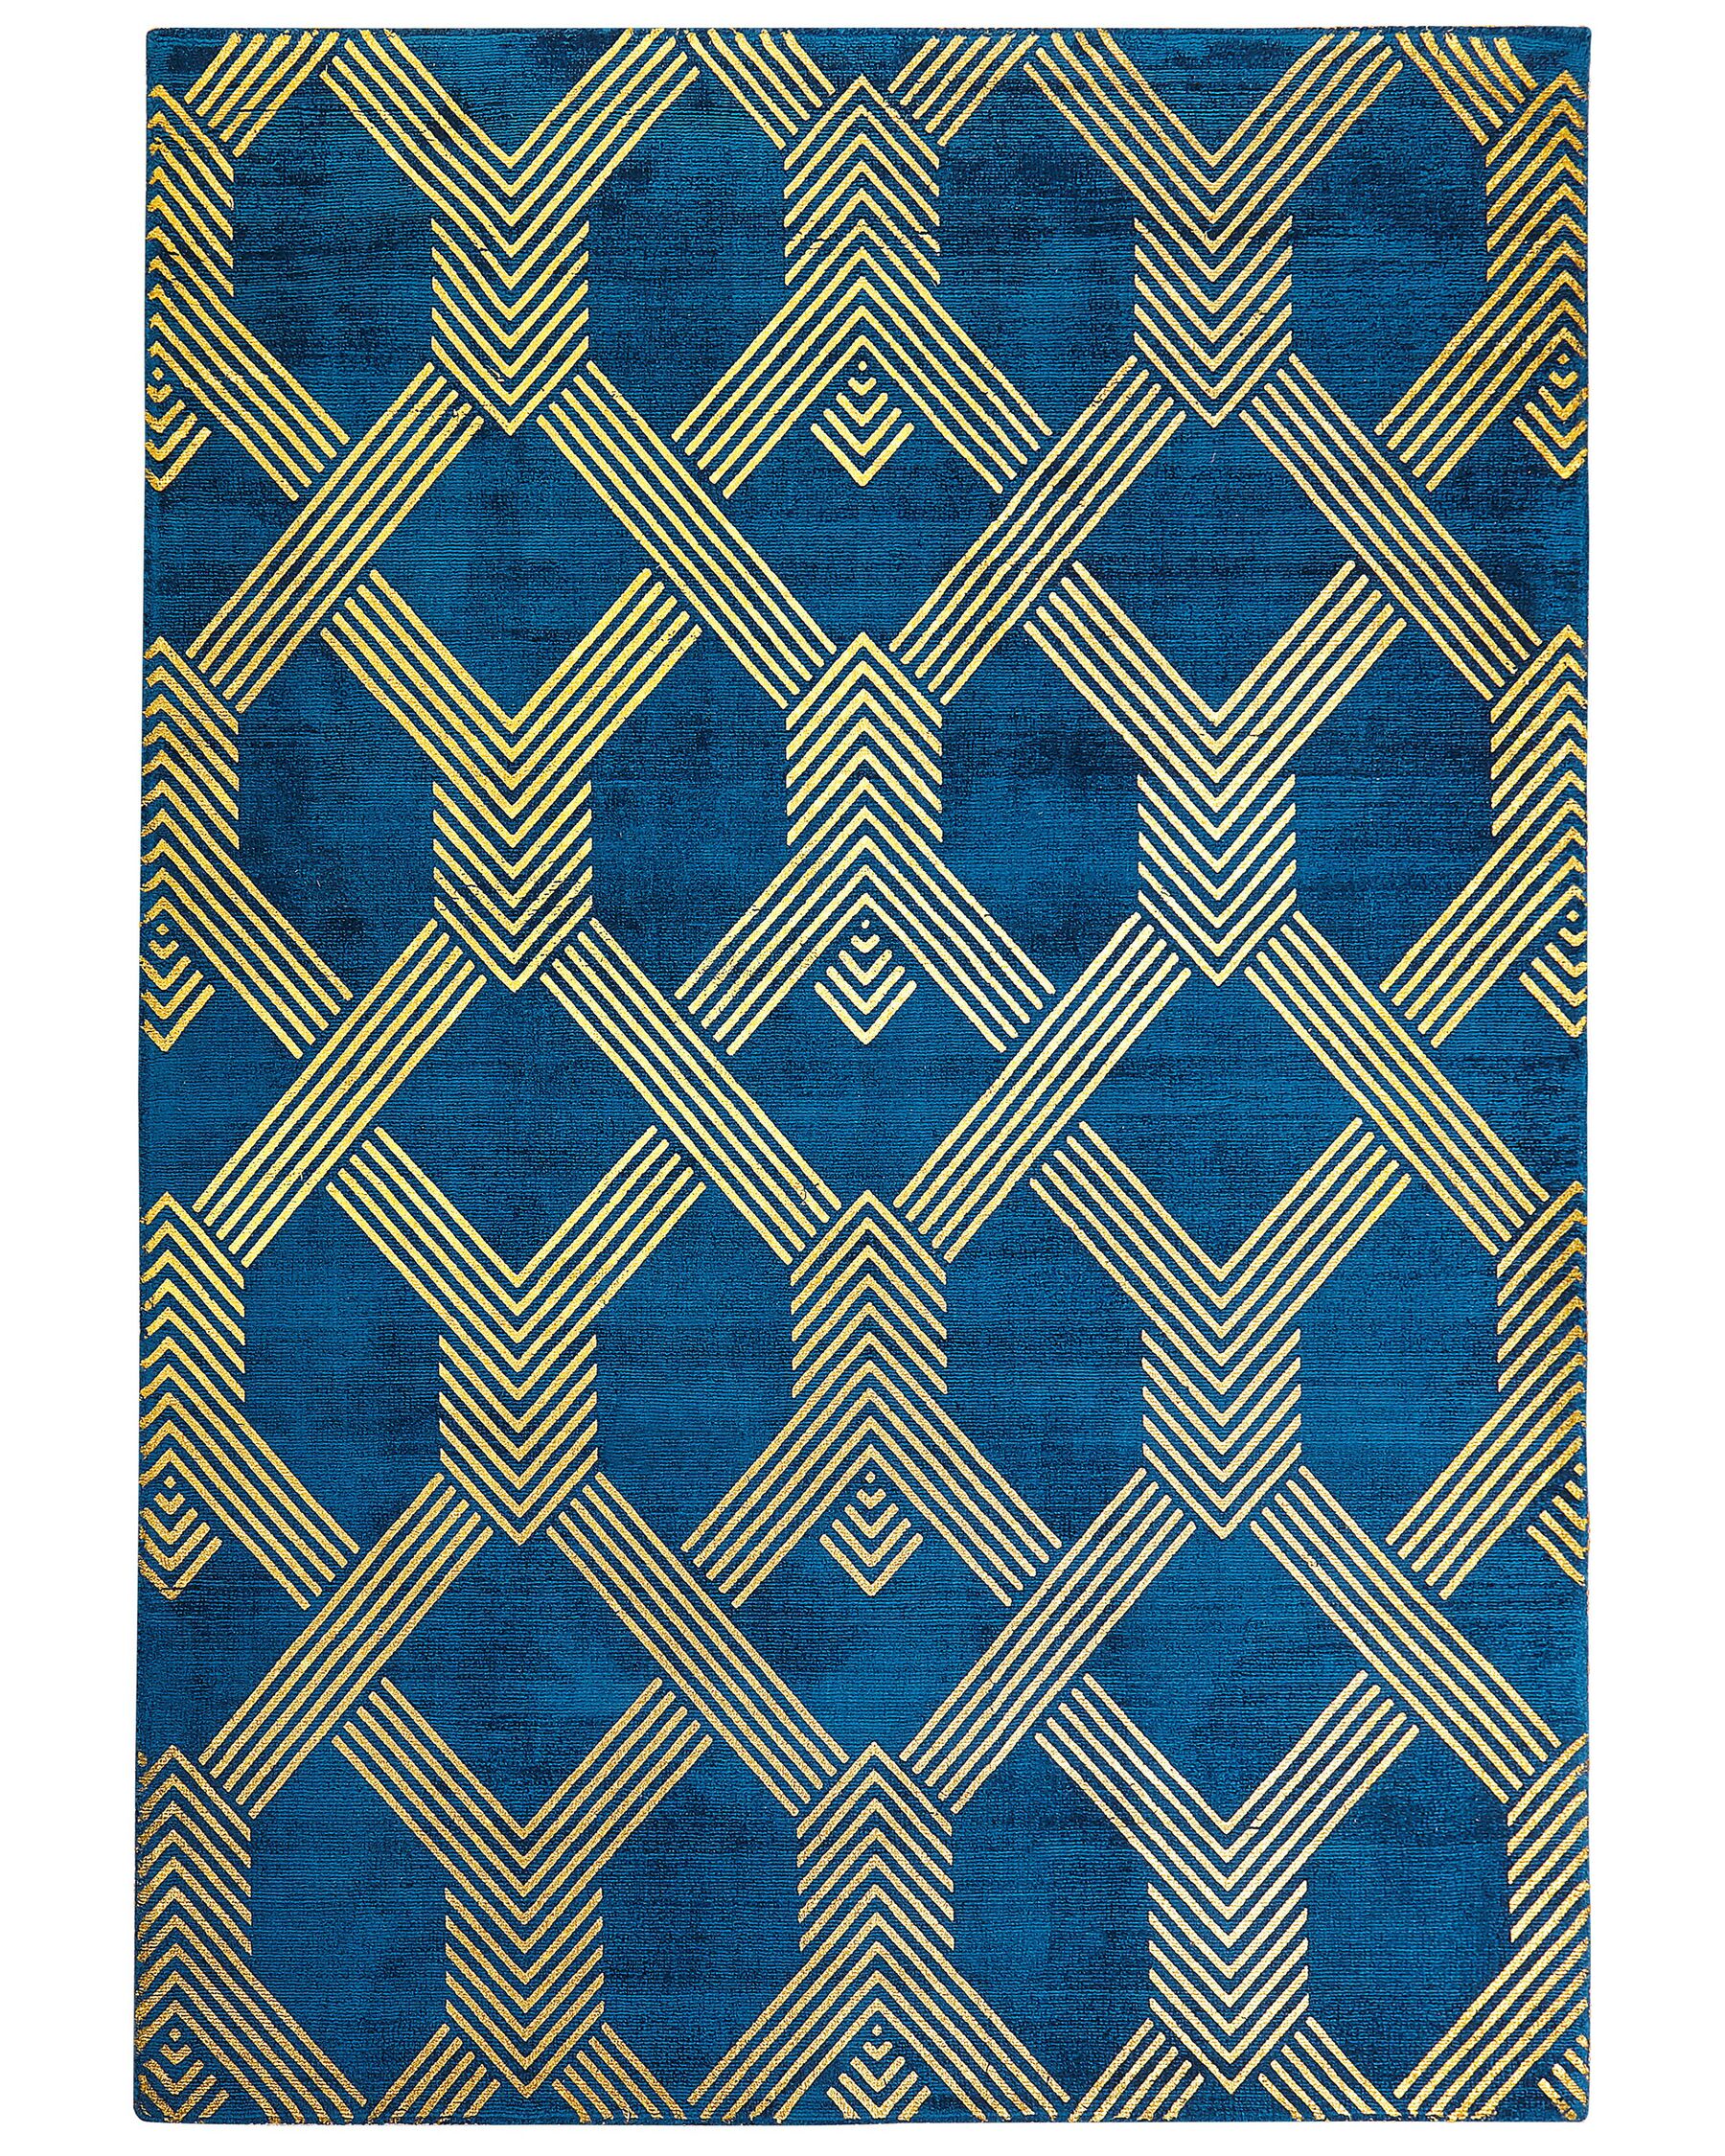 Tapis en viscose et coton bleu marine et doré à motif géométrique avec craquelures 160 x 230 cm VEKSE_762350